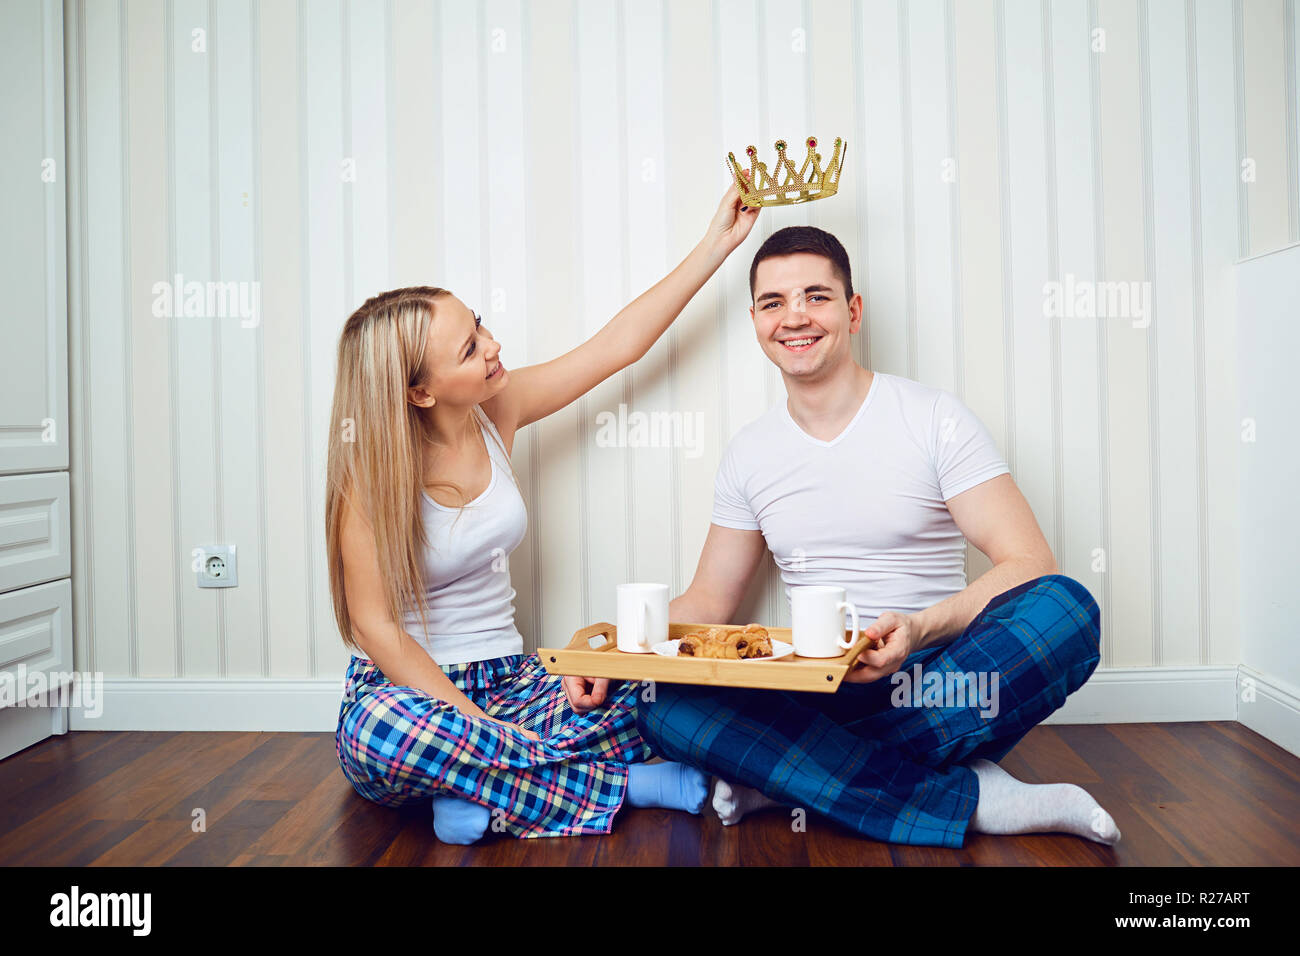 Una pareja feliz en pijama sentada en el piso de una habitación contra un Foto de stock